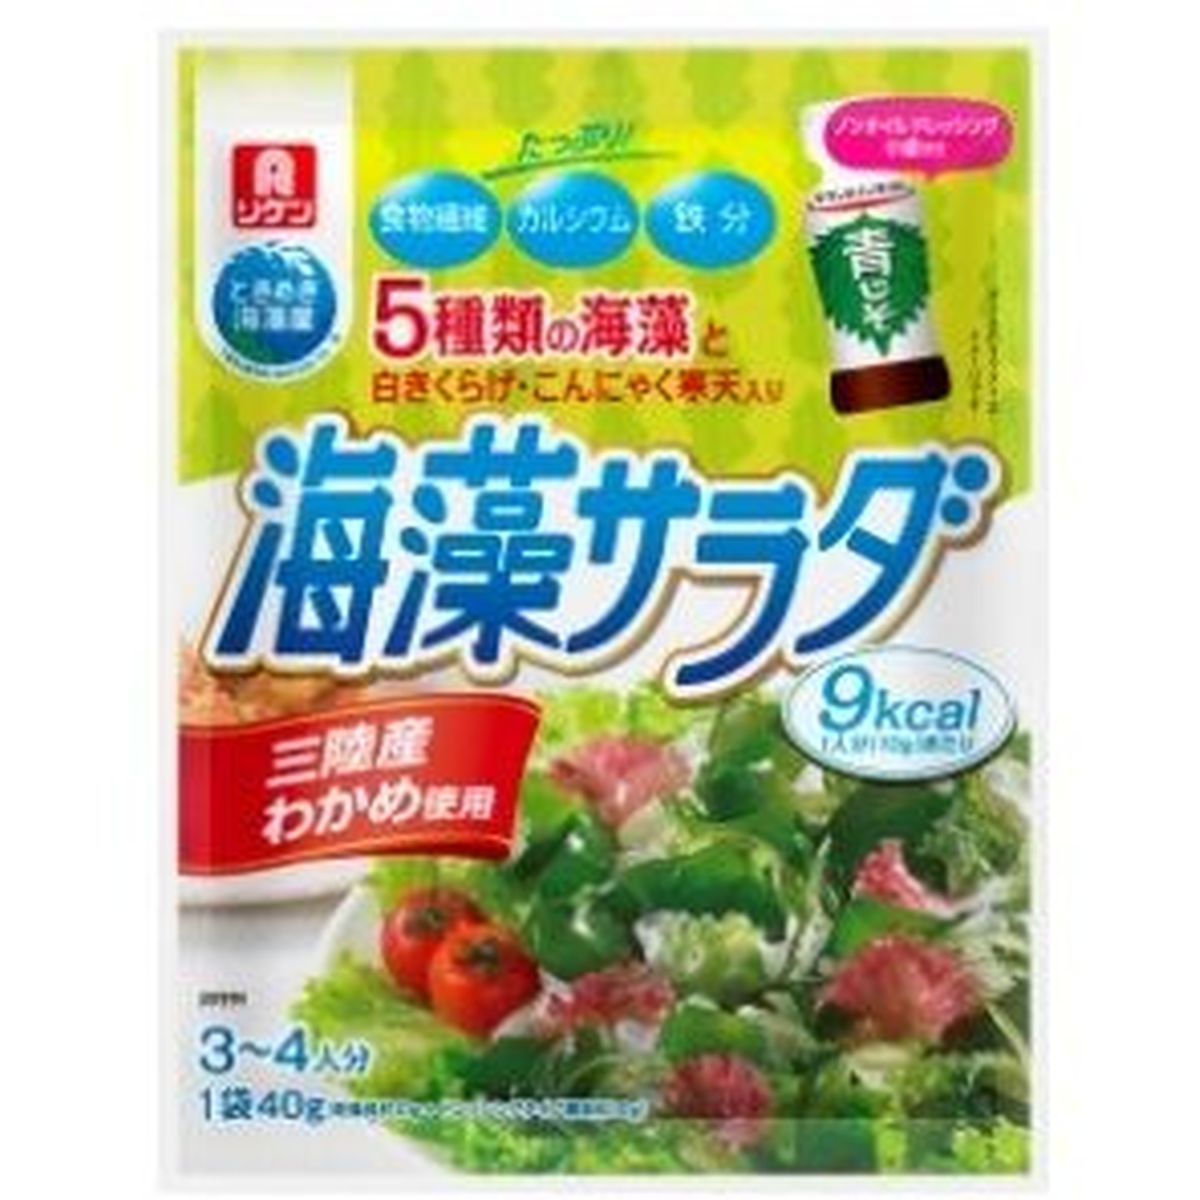 【10個入リ】理研 乾燥 海草サラダ 10g